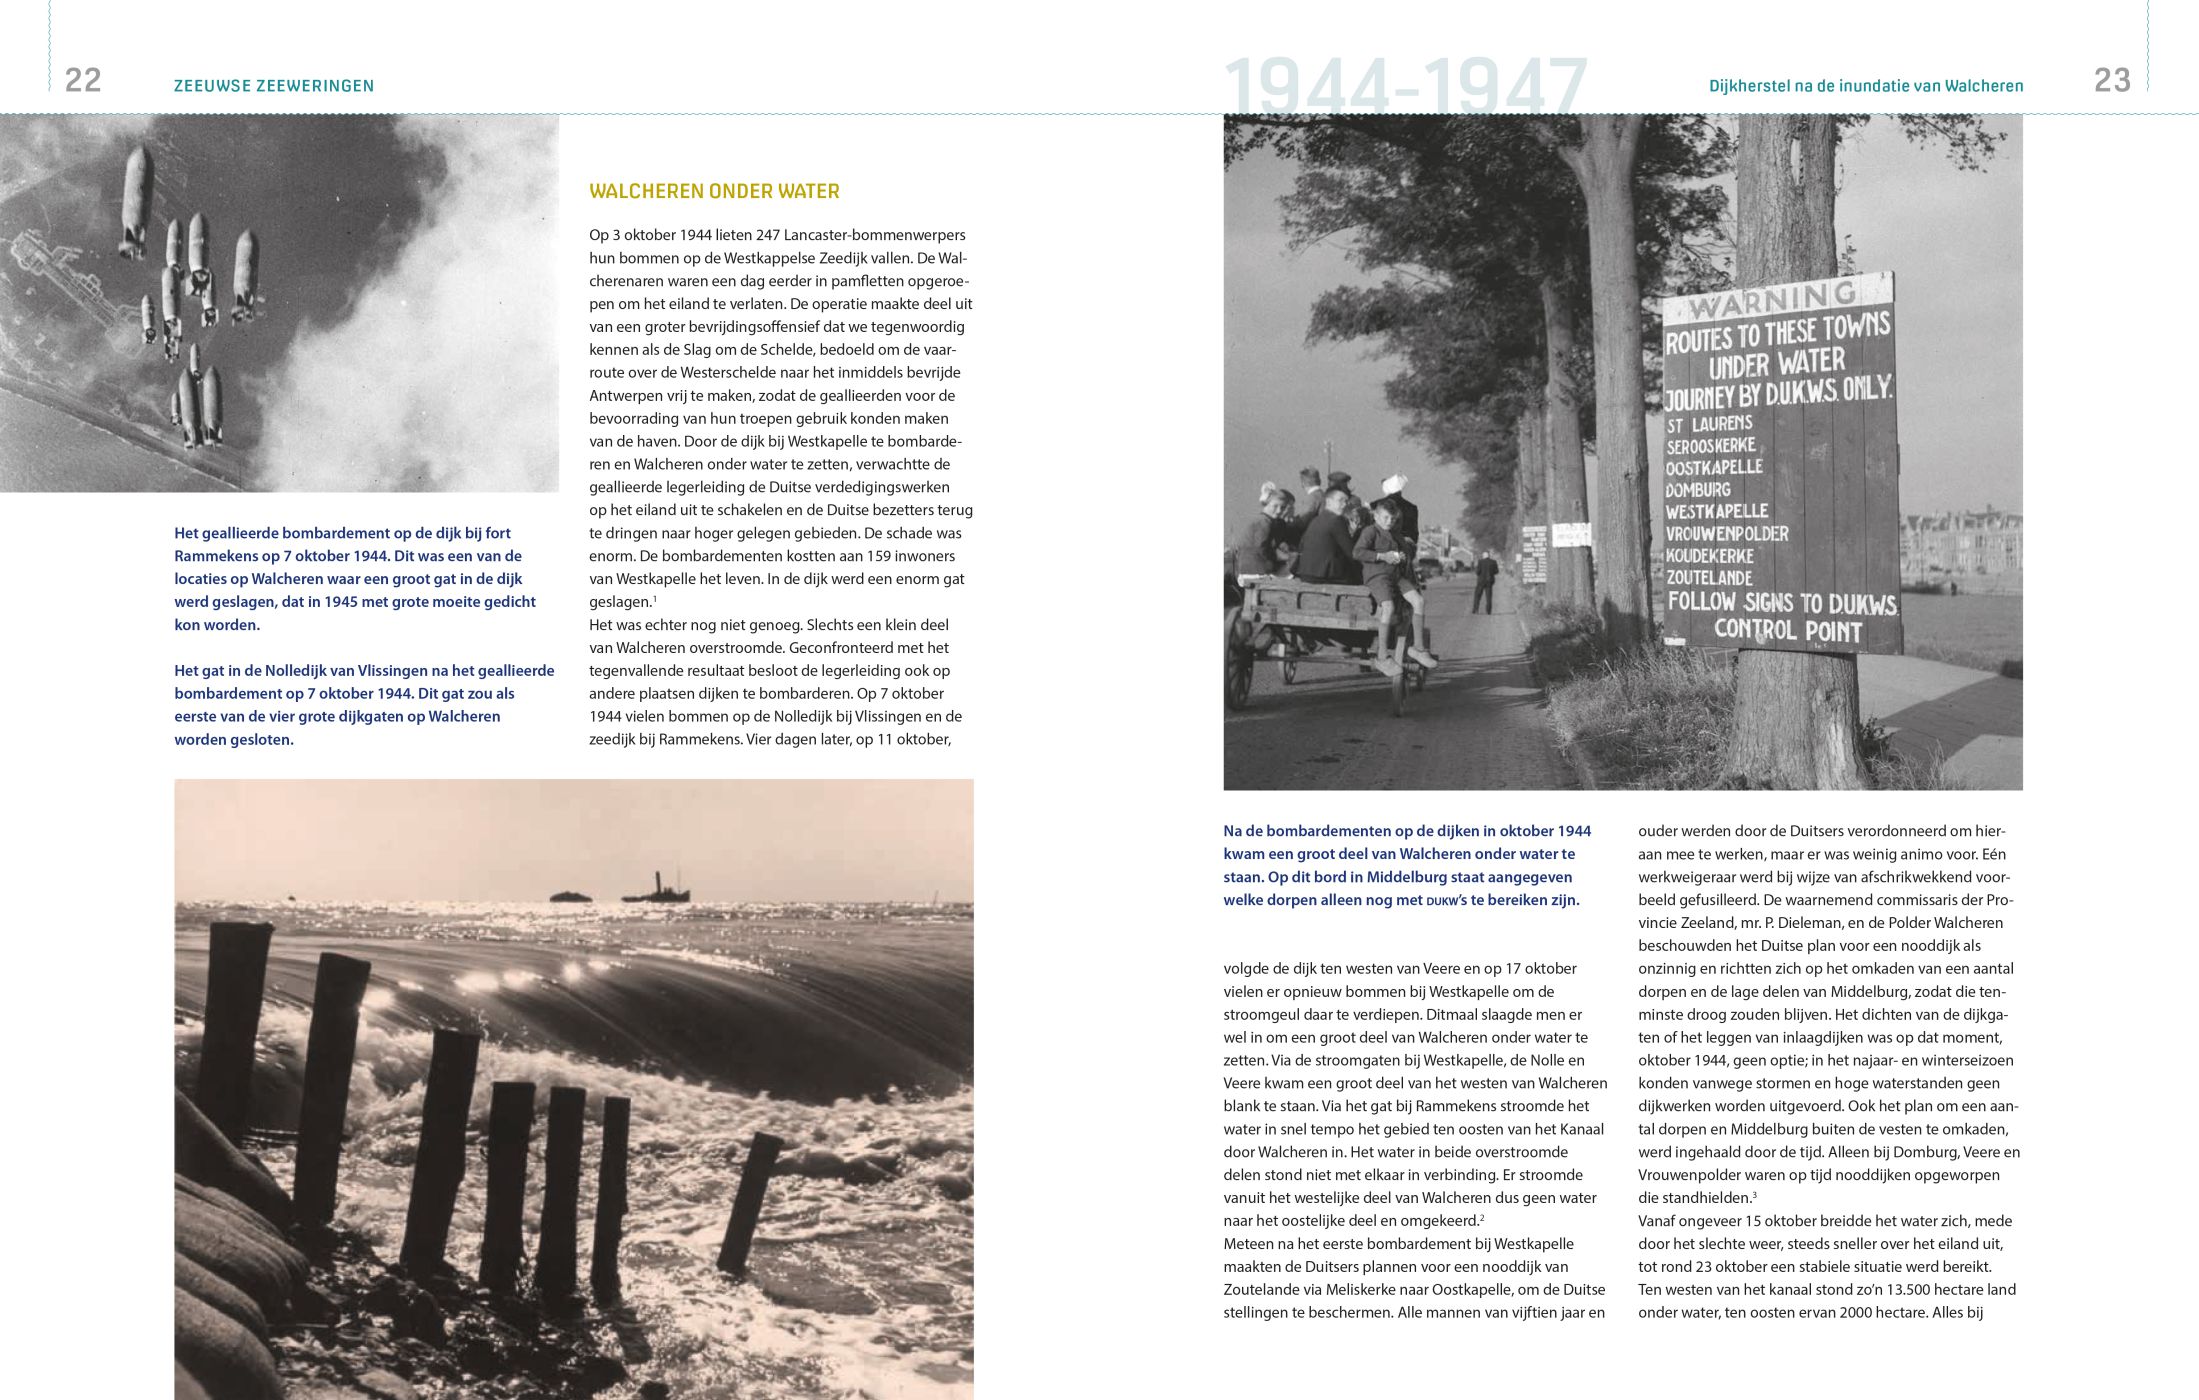 Inkijkexemplaar van het boek: <em>Zeeuwse zeeweringen. Werken aan de Zeeuwse kust, 1944-2015</em> - © Uitgeverij Matrijs